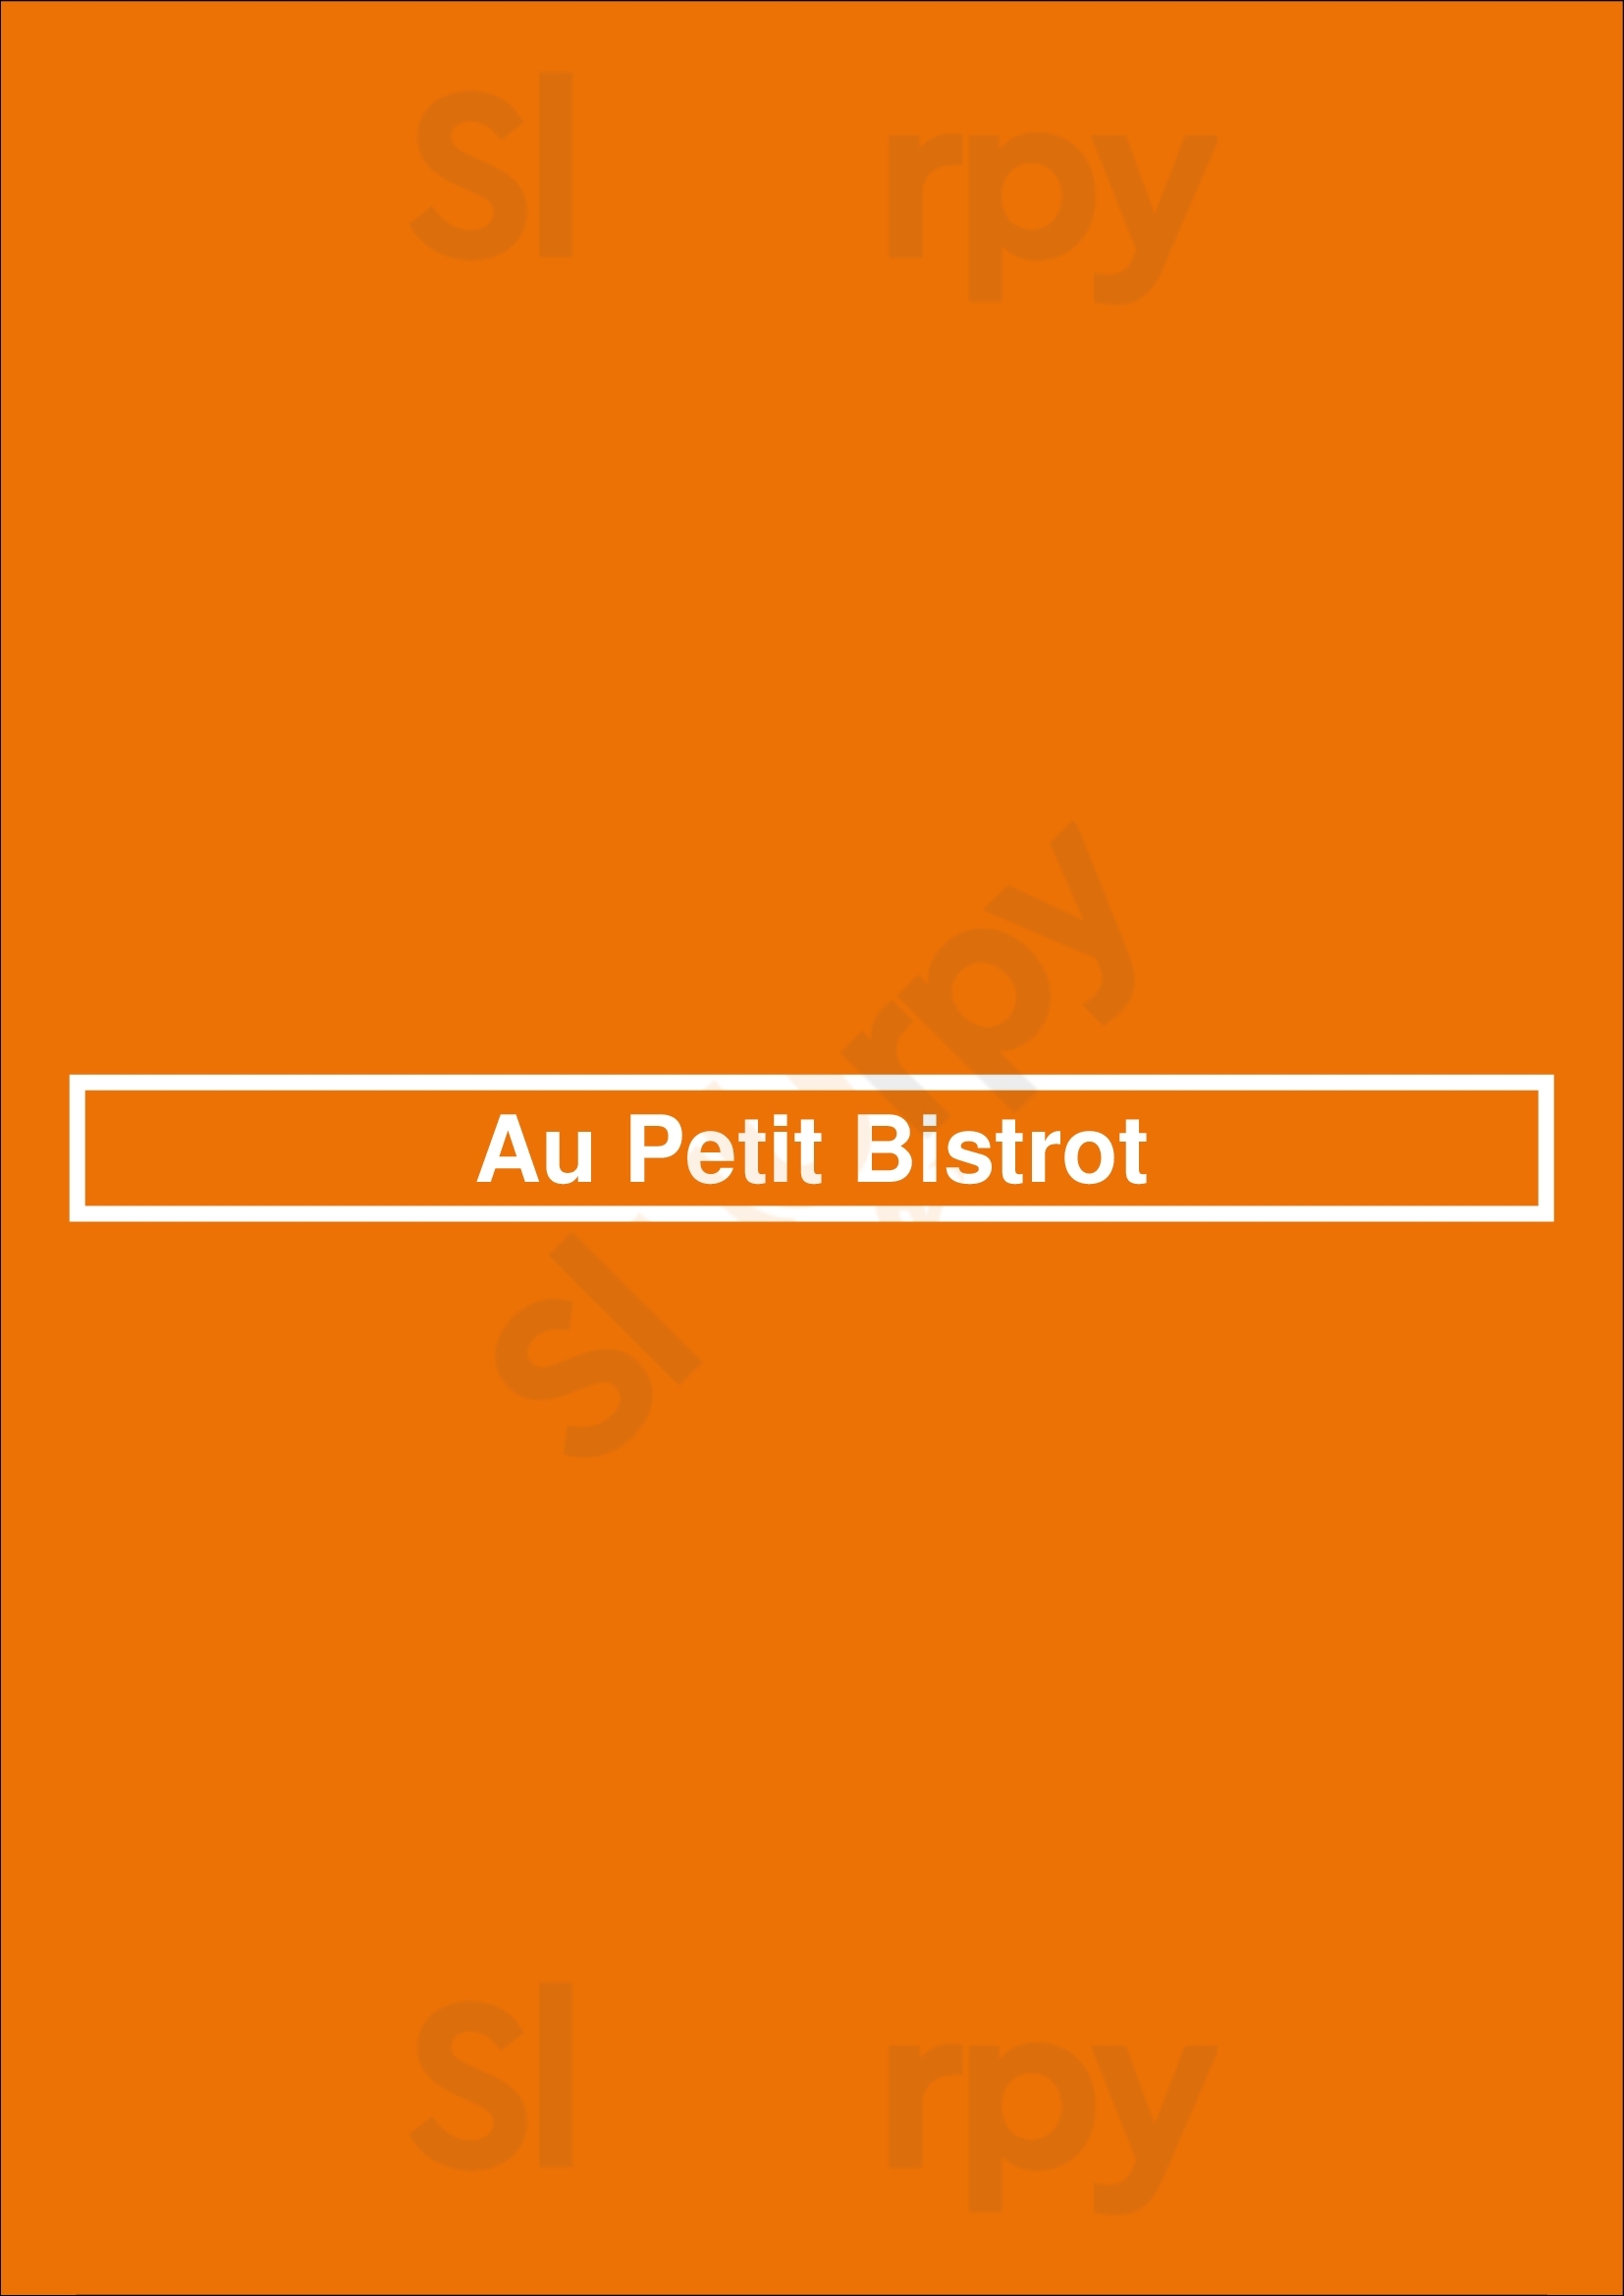 Au Petit Bistrot Paris Menu - 1